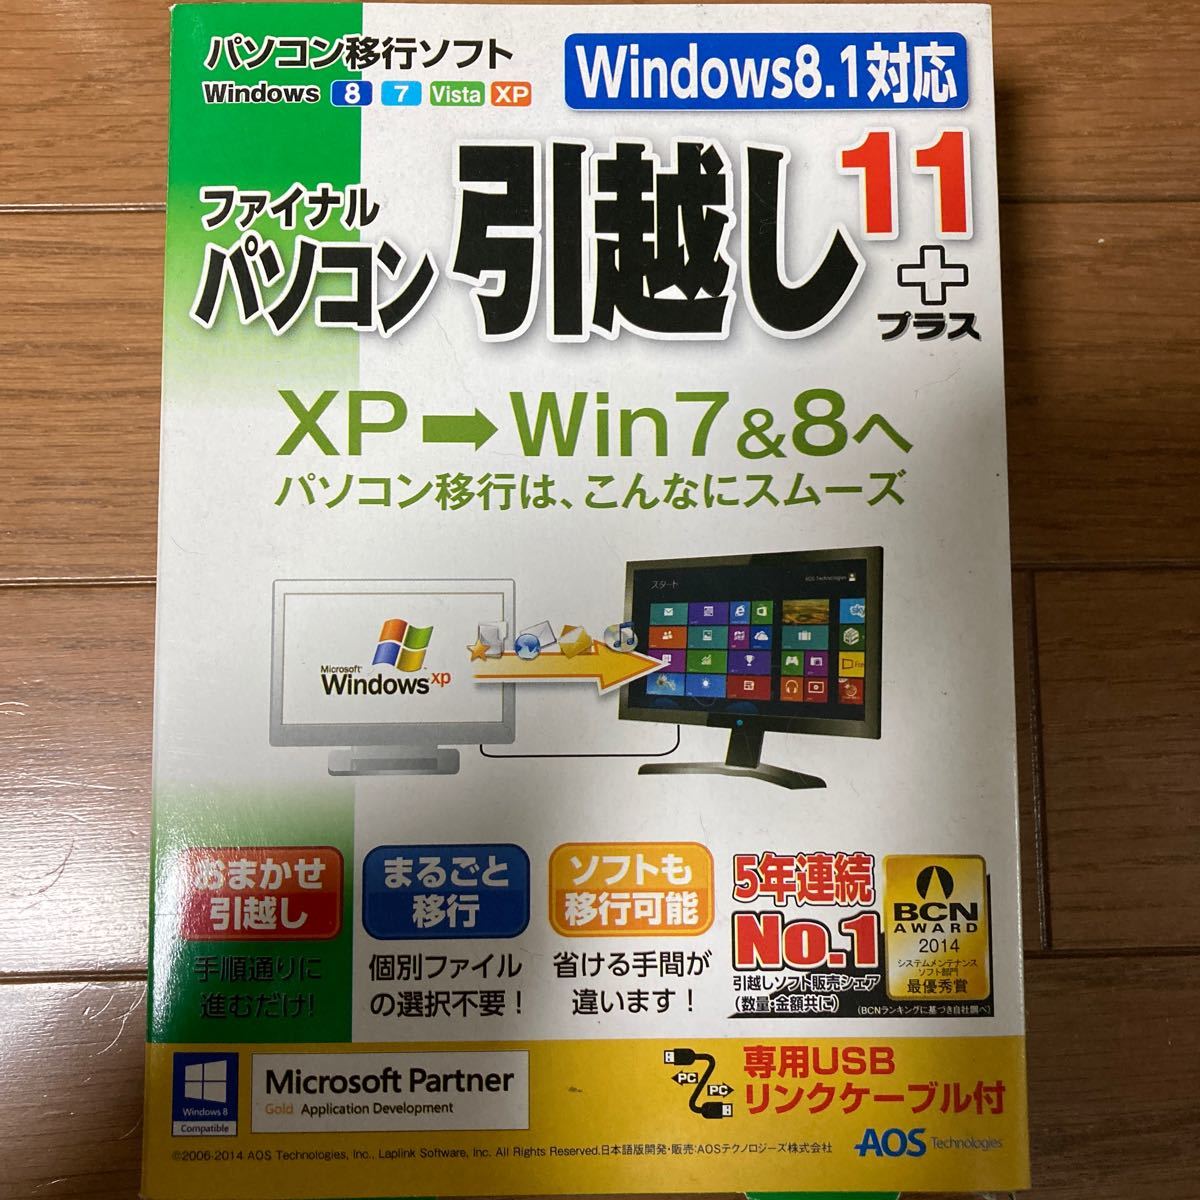 パソコン移行ソフト ファイナルパソコン引越し11プラス  Windows8.1対応